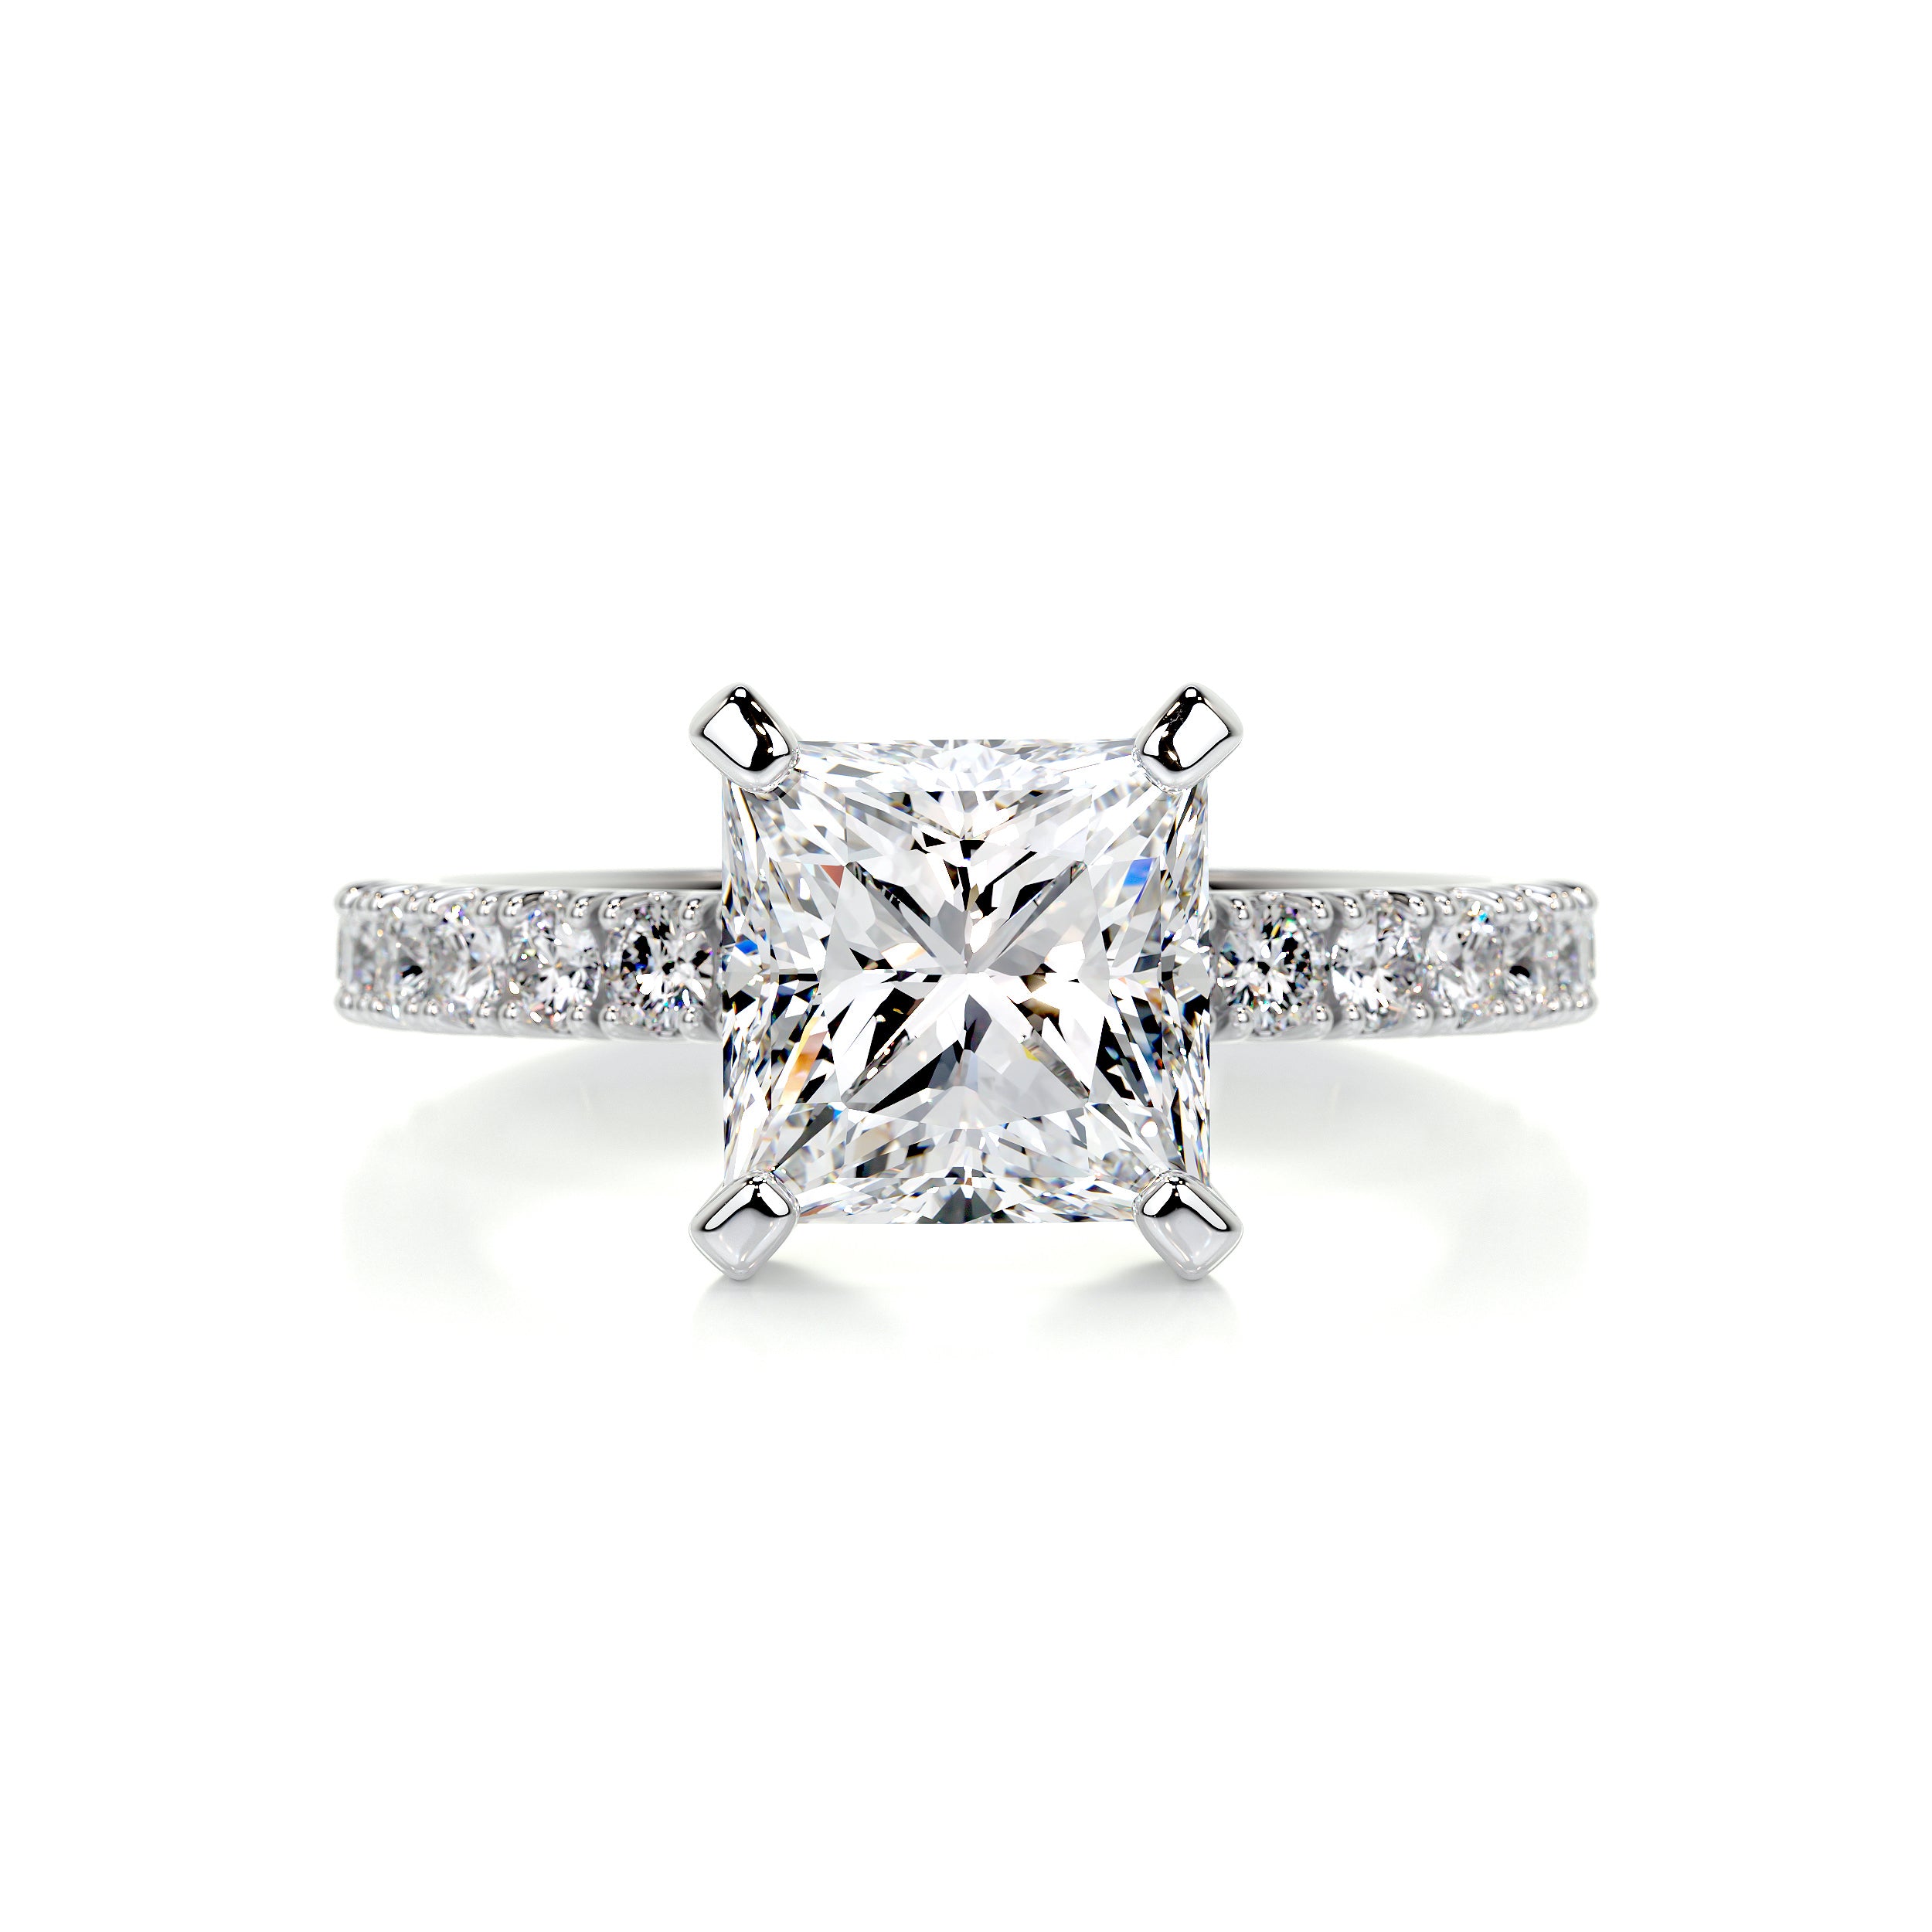 Blair Diamond Engagement Ring   (2.5 Carat) -14K White Gold